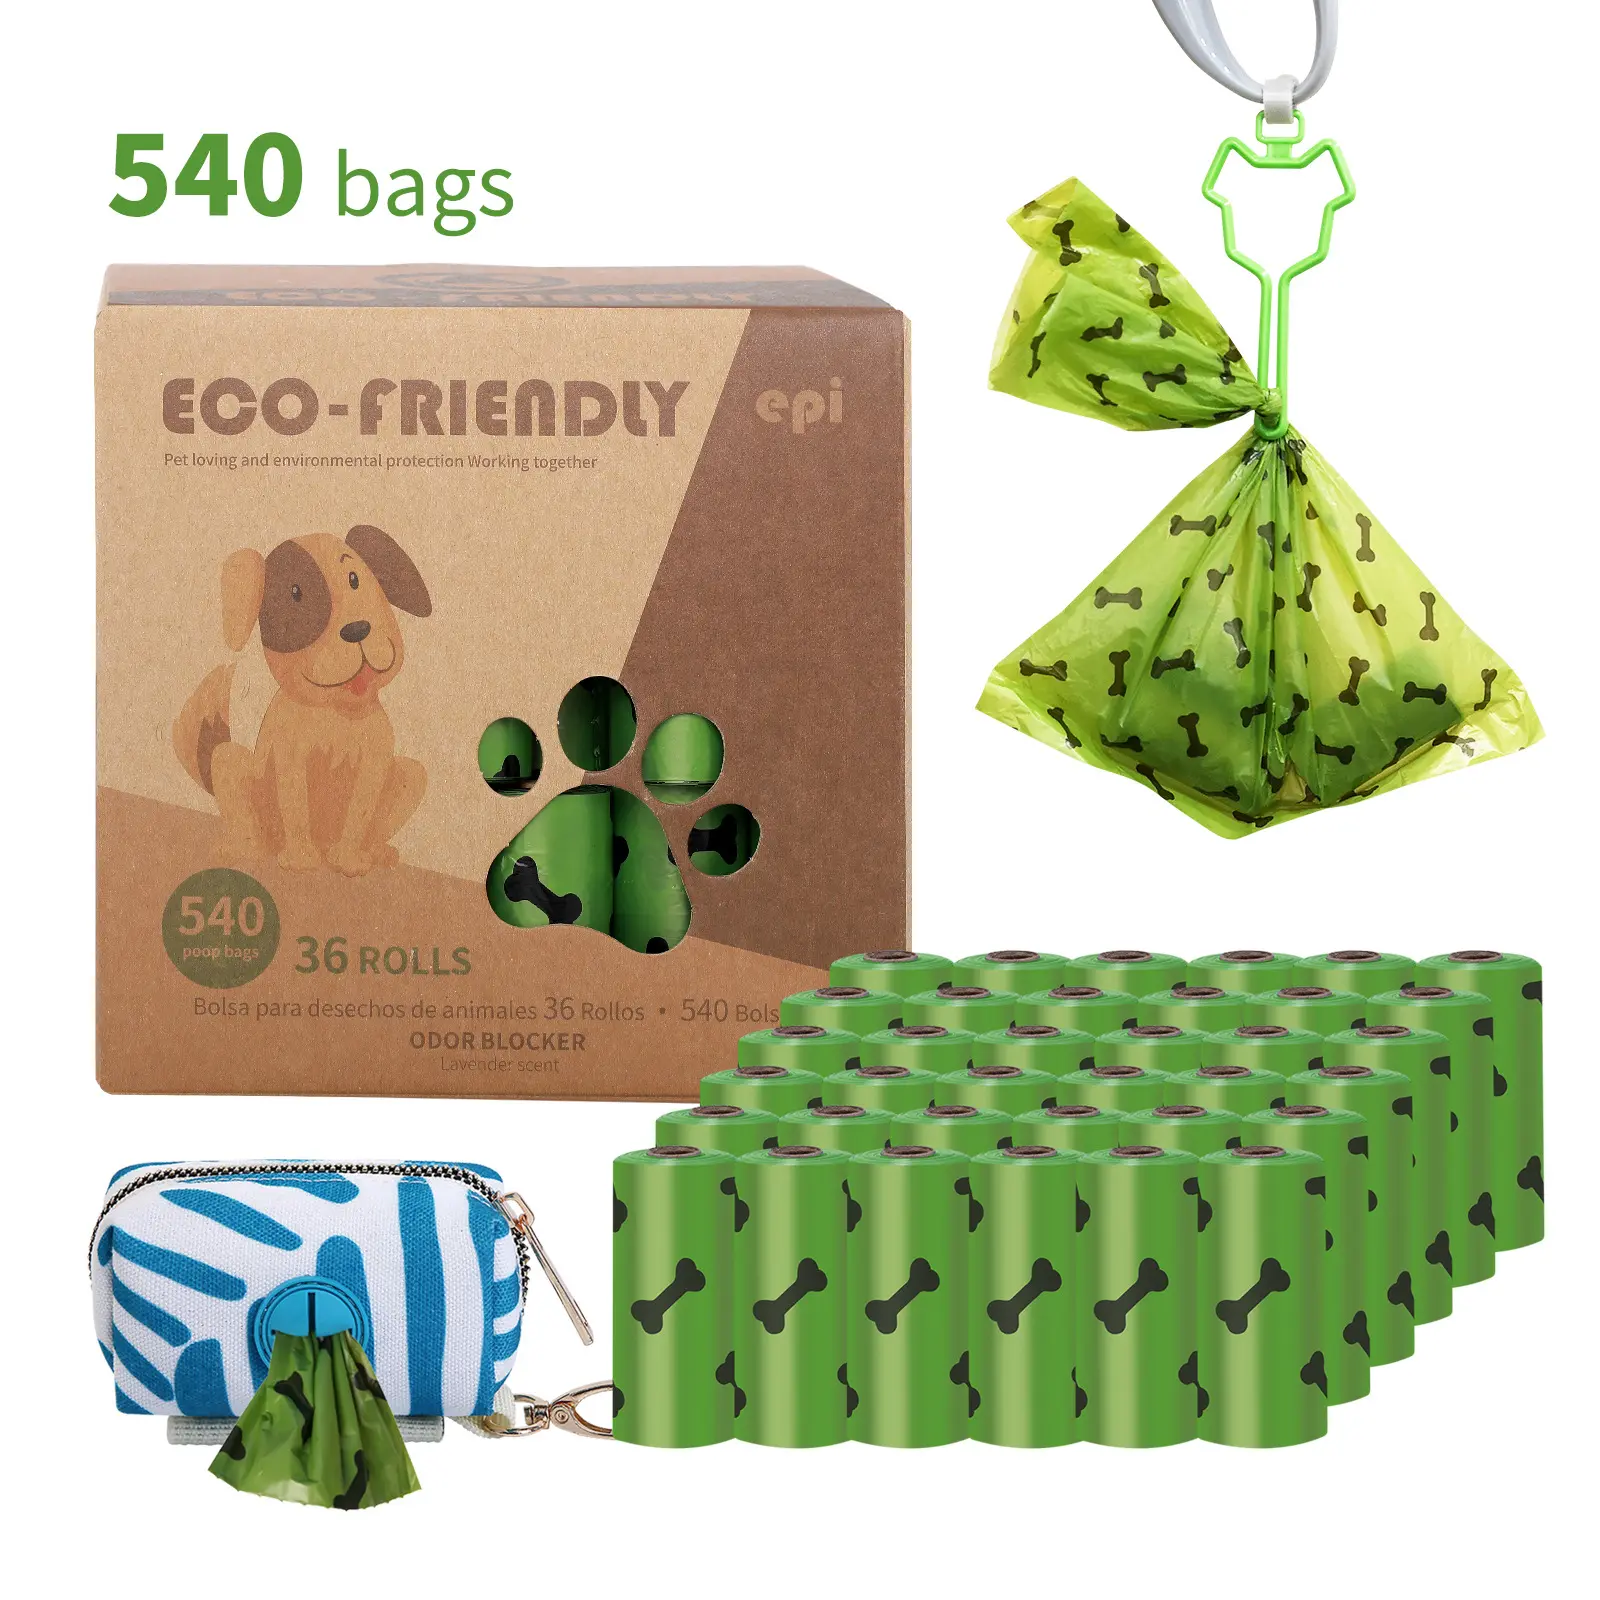 2021 Amazon Bán Chạy Nhất Xách Tay Dog Poop Bag Để Làm Sạch Và Vệ Sinh